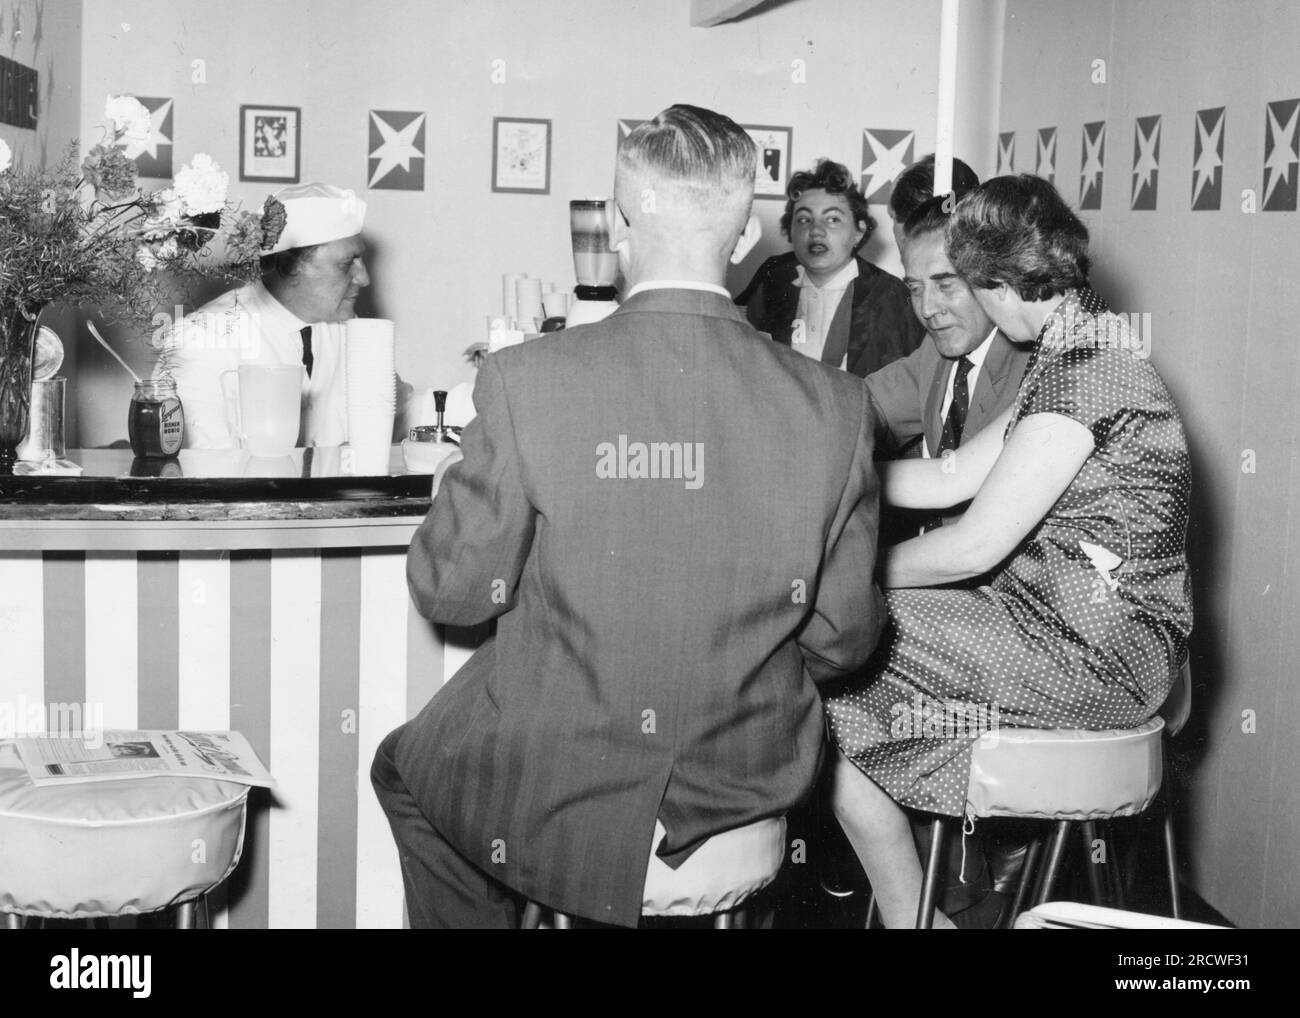 Gastronomie, bar à lait dans la Pressehaus, Hambourg, pendant la réunion du cercle des lecteurs, 1957, INFORMATIONS-AUTORISATION-DROITS-SUPPLÉMENTAIRES-NON-DISPONIBLES Banque D'Images